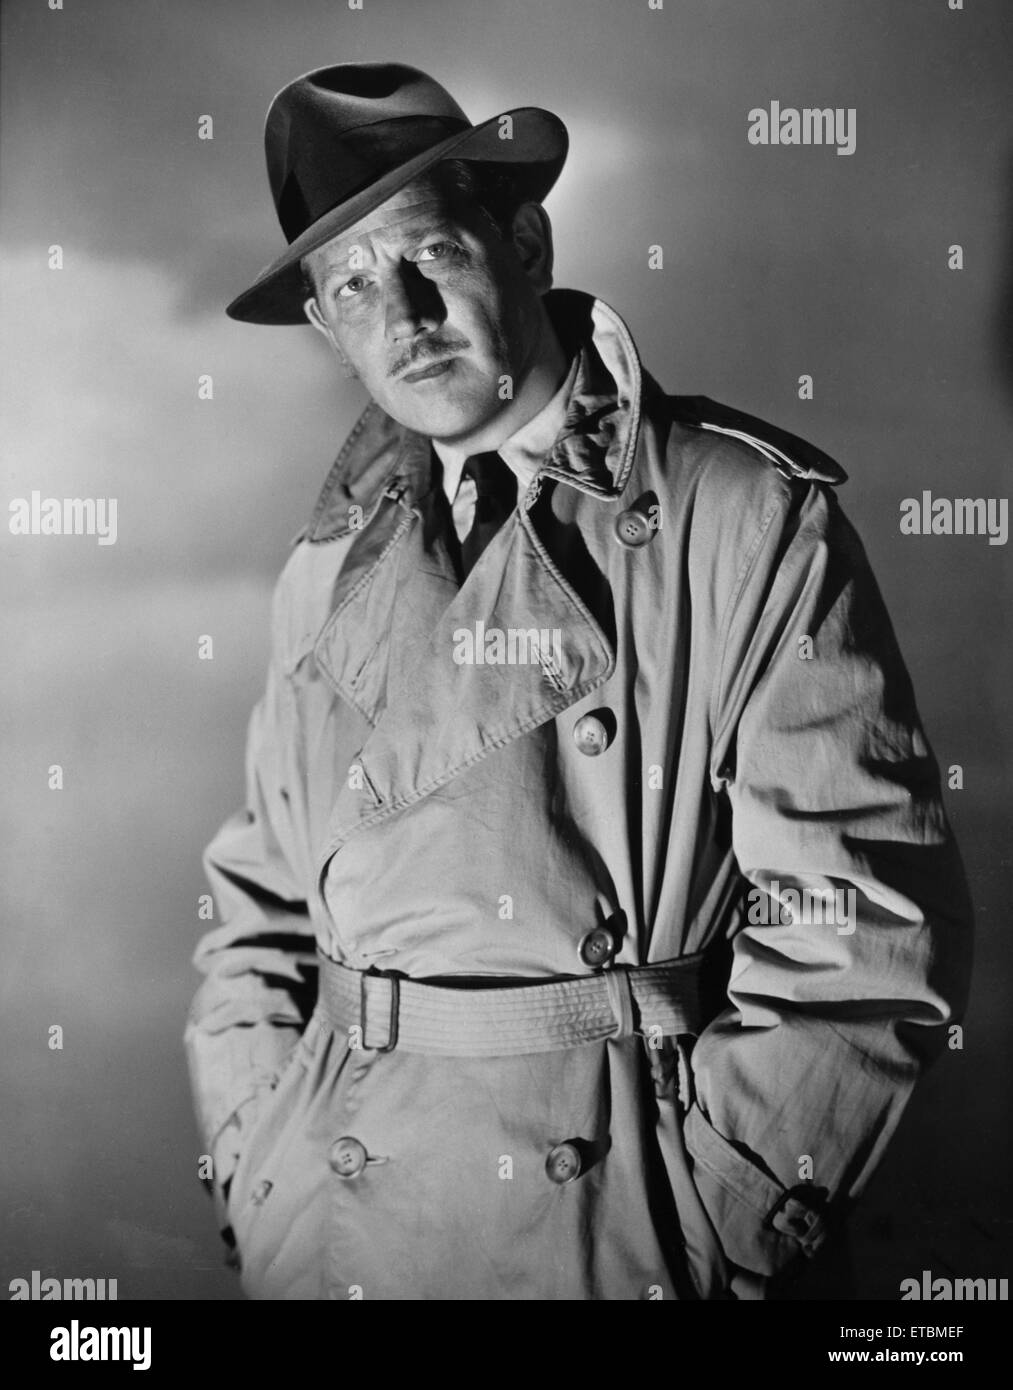 Actor Melvyn Douglas, Publicity Portrait, 1948 Stock Photo